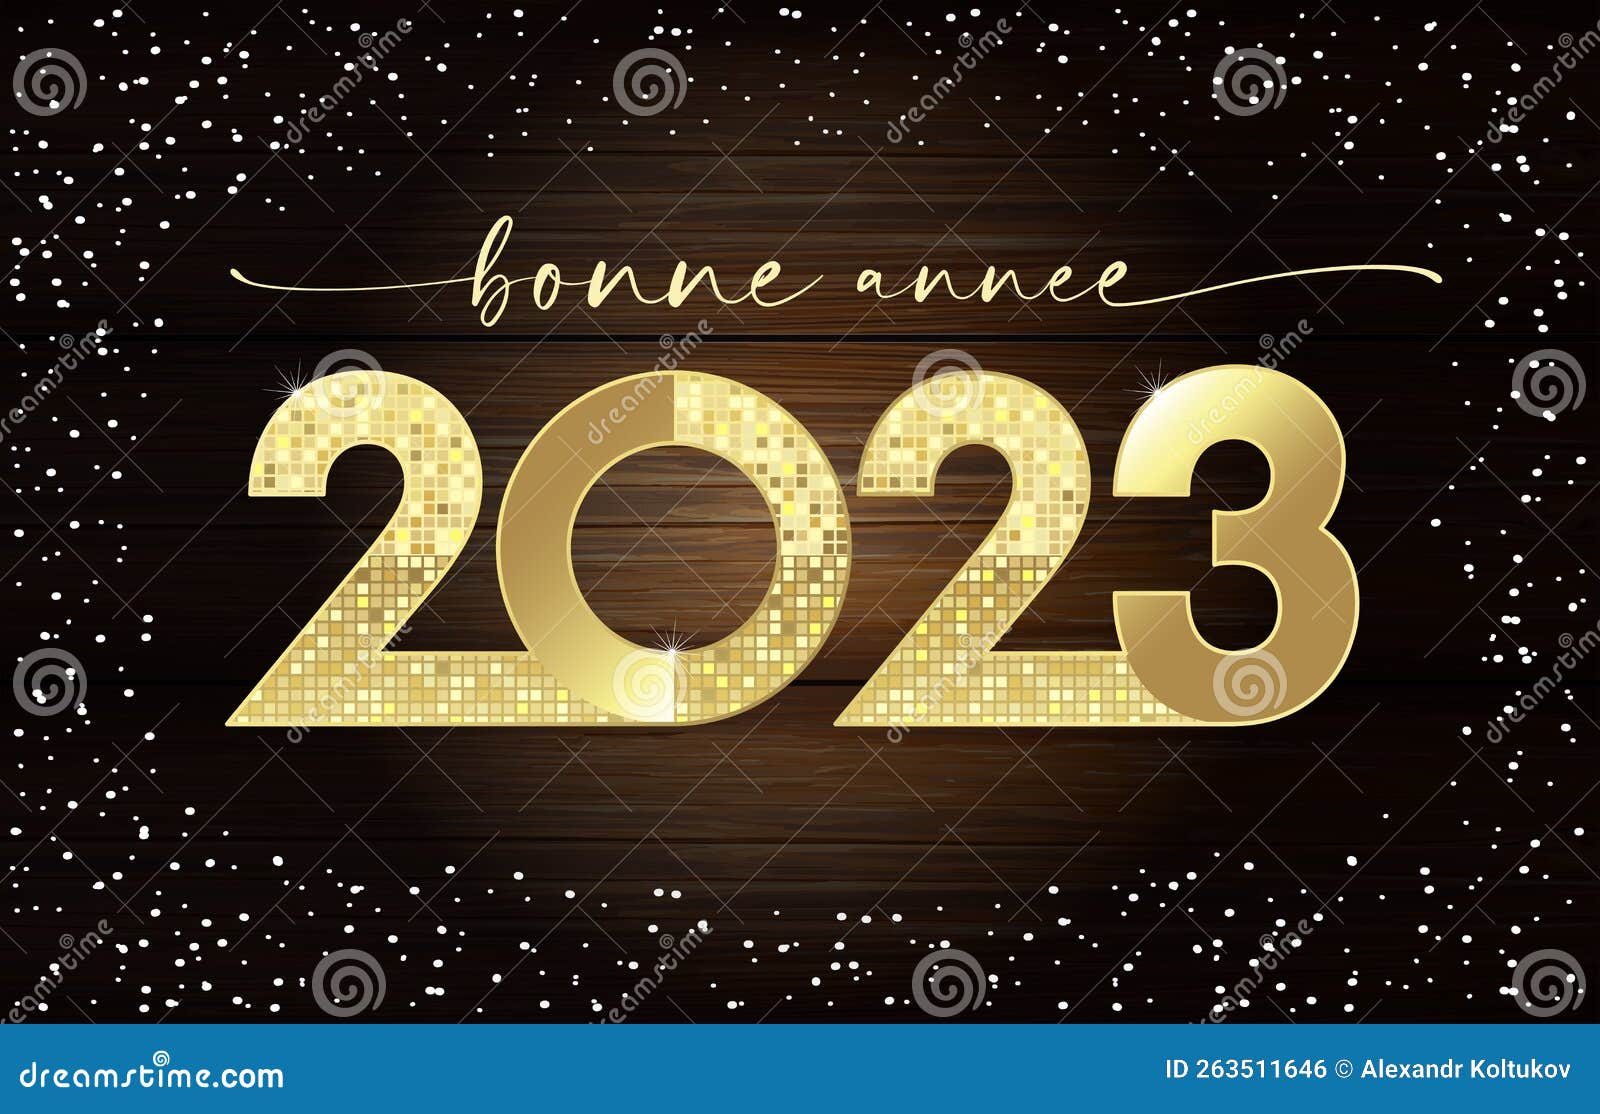 Bonne année et bonne santé ! Lawless French Holiday Wish